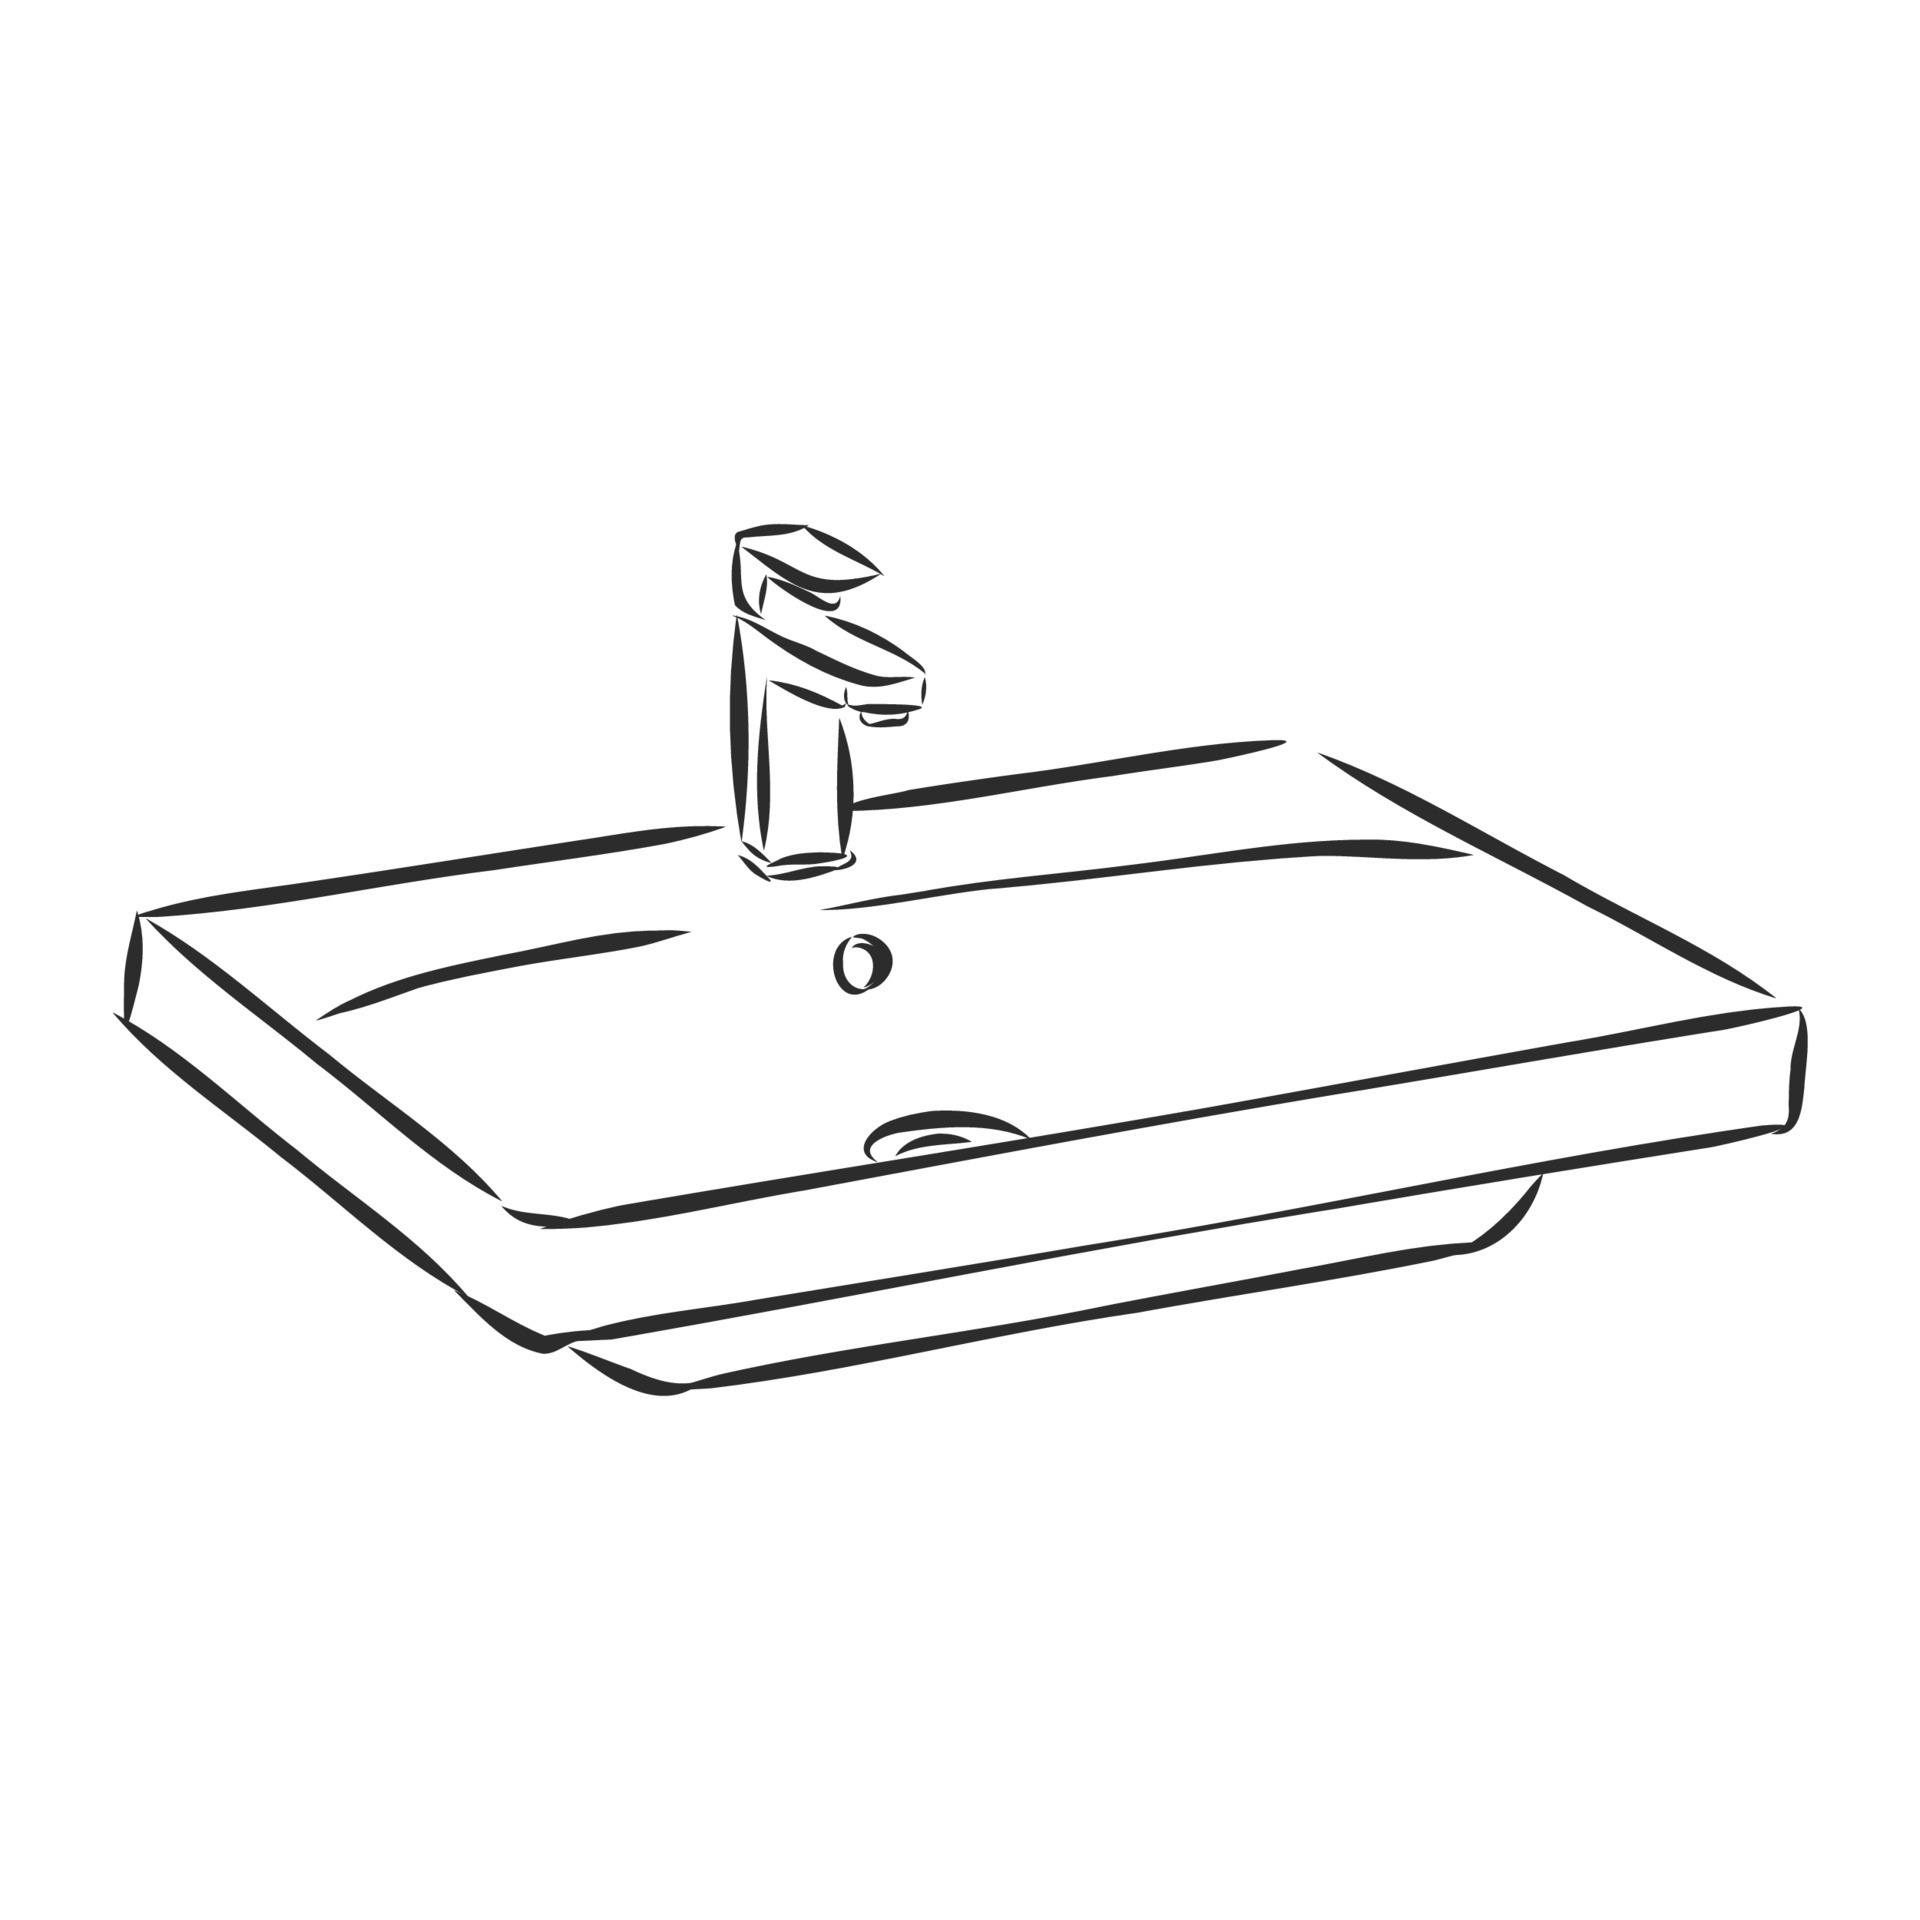 Kitchen Sink Drawing Images  Free Download on Freepik